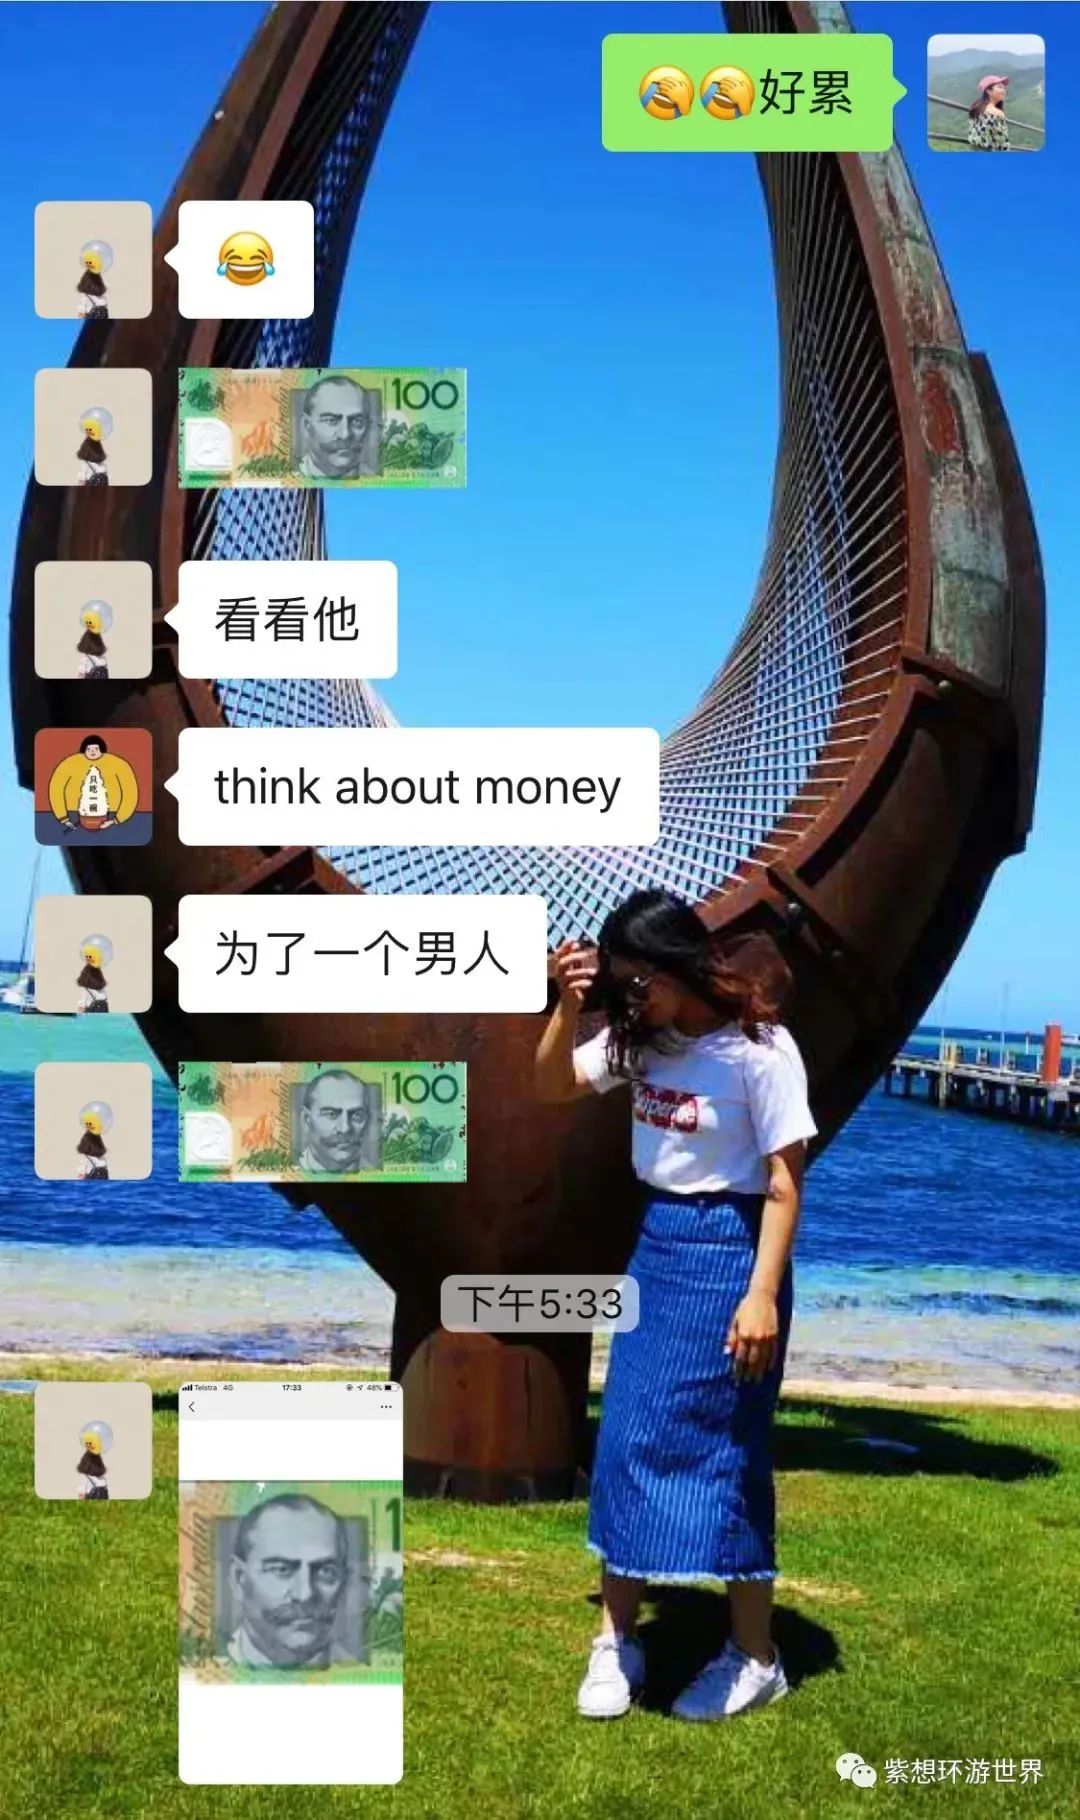 “think about money”的打工度假生活